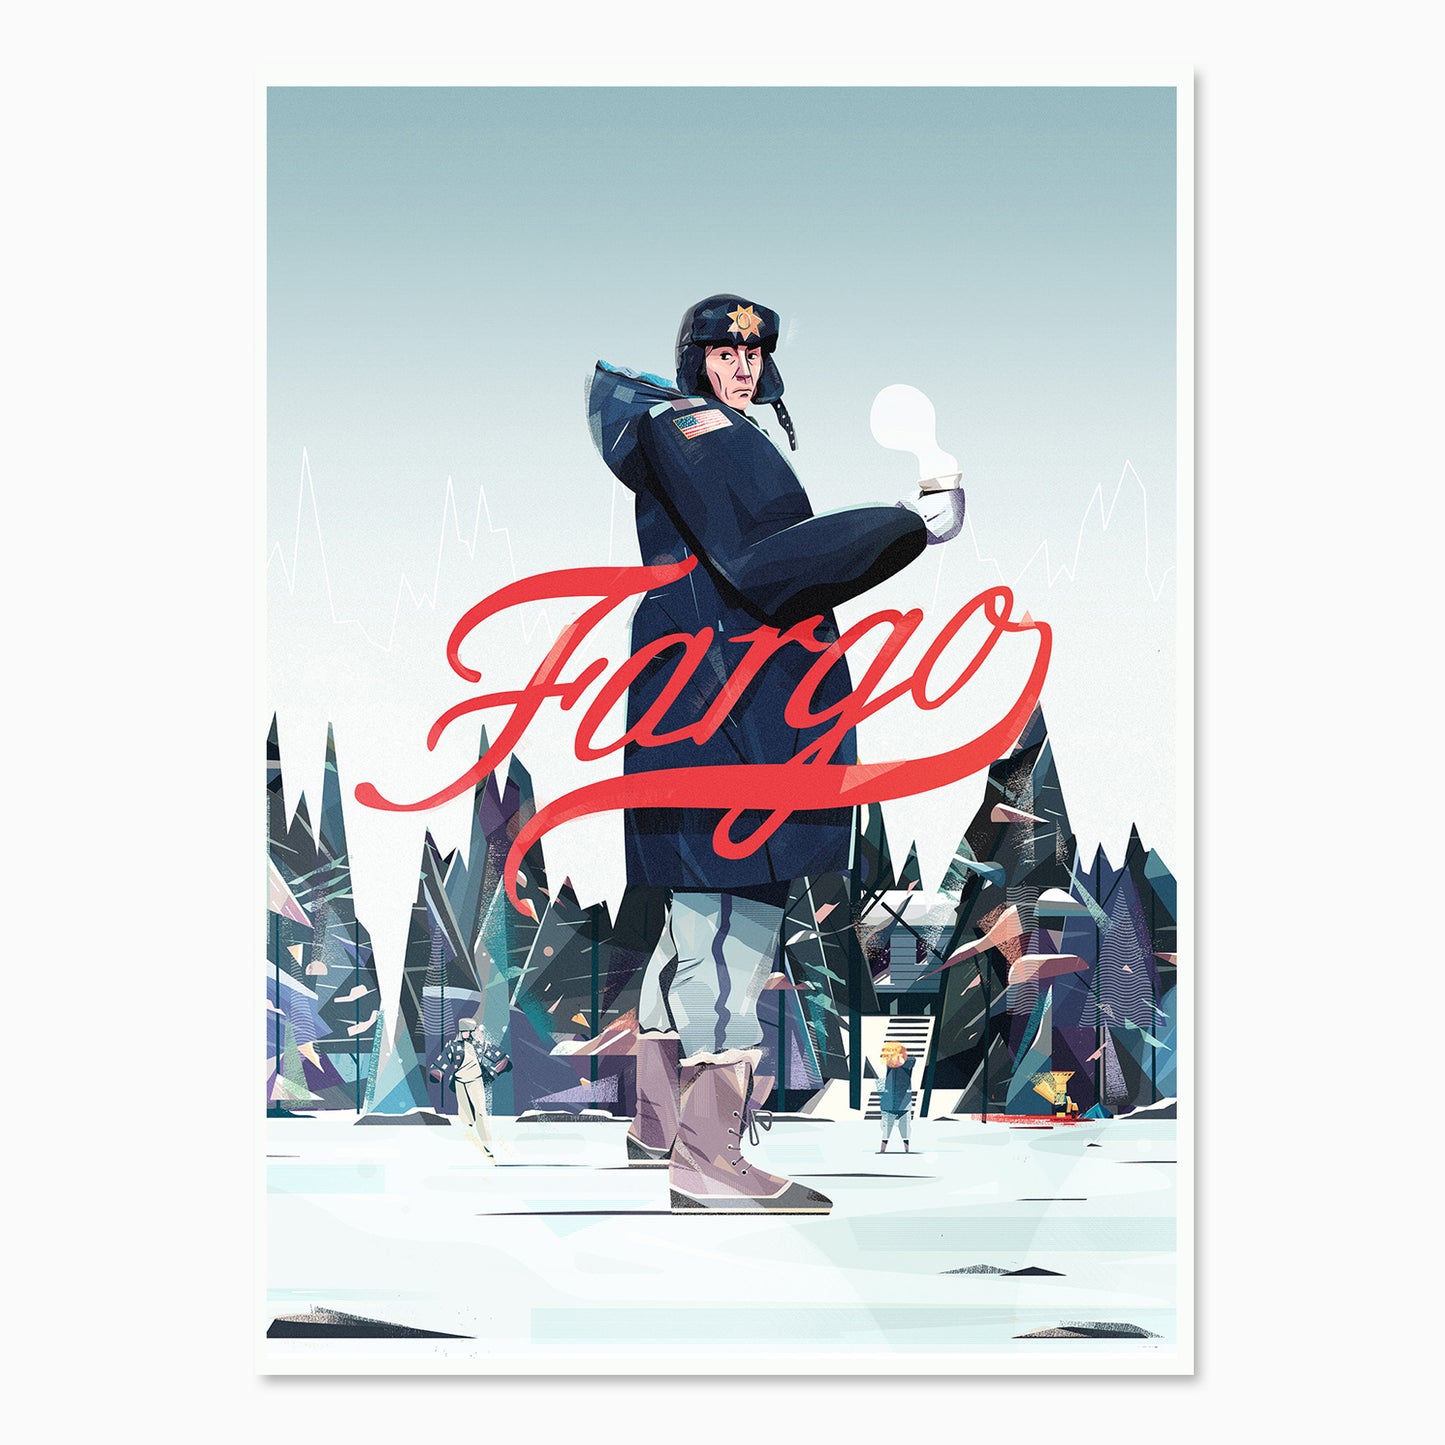 Fargo by Joe Waldron